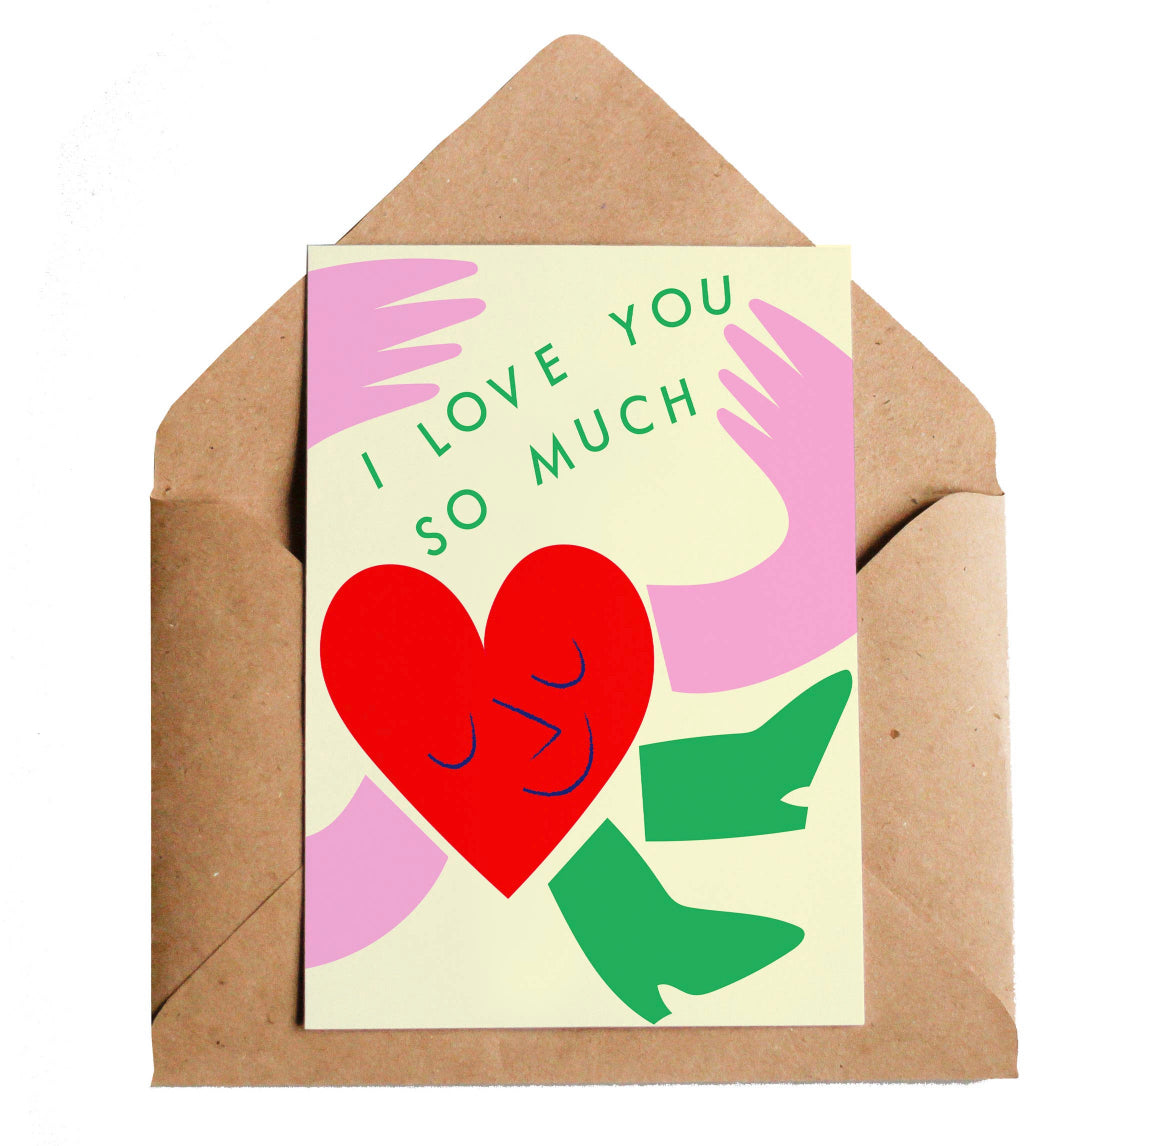 Love You Heart Card